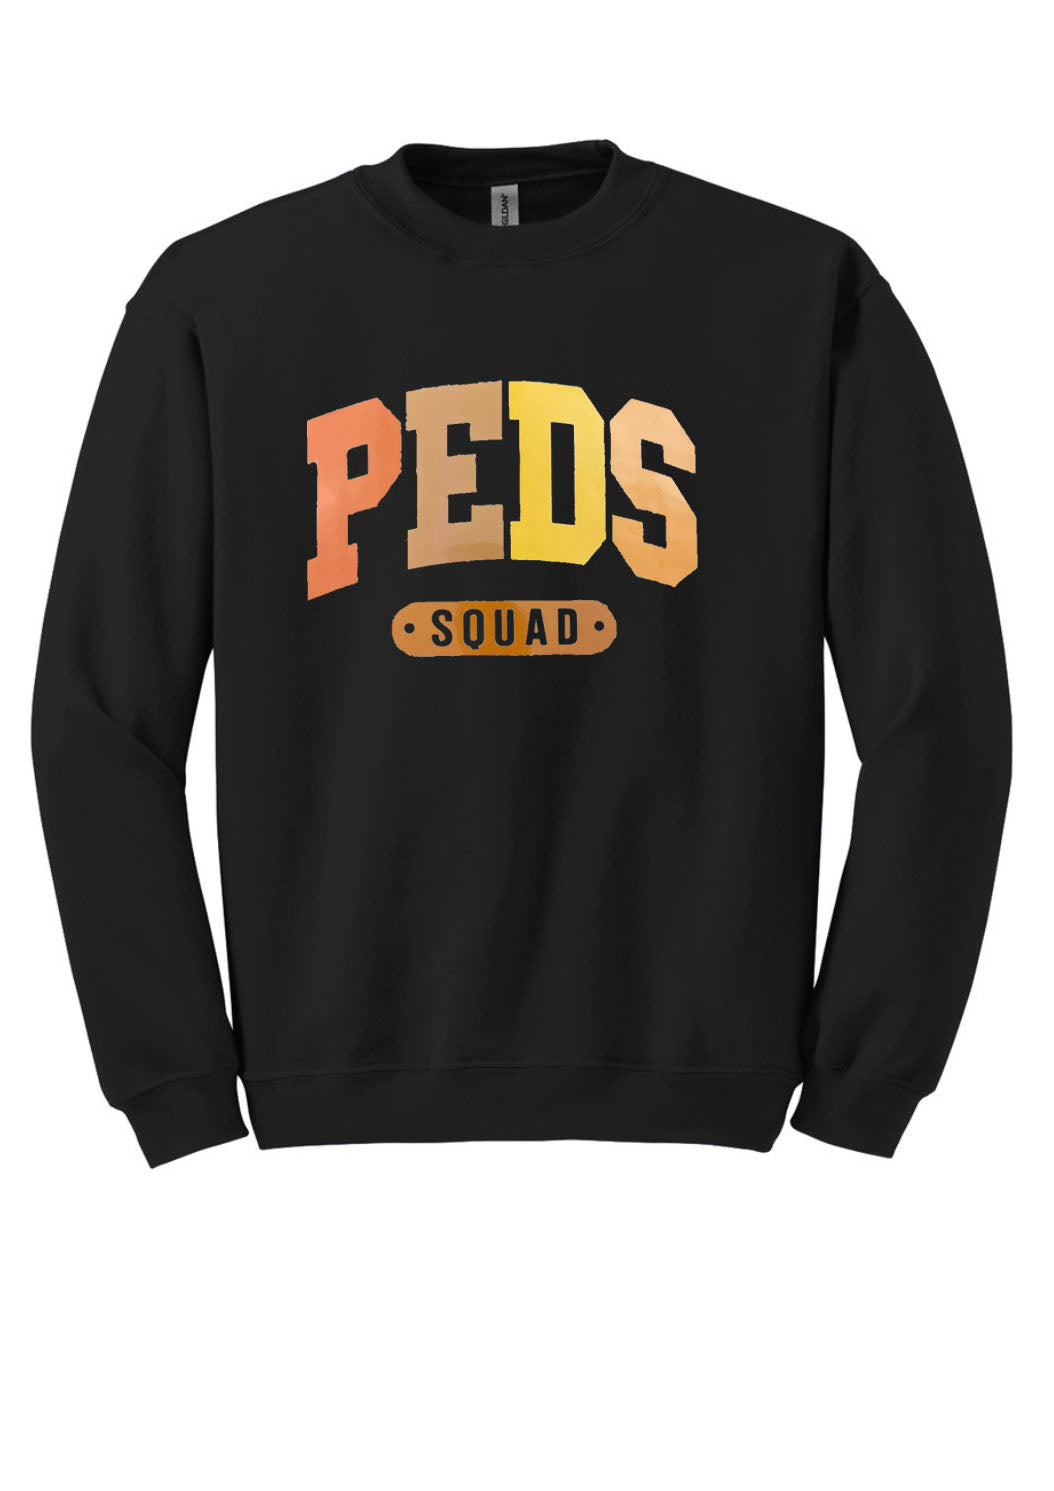 Peds Squad Unisex Shirt or Crew